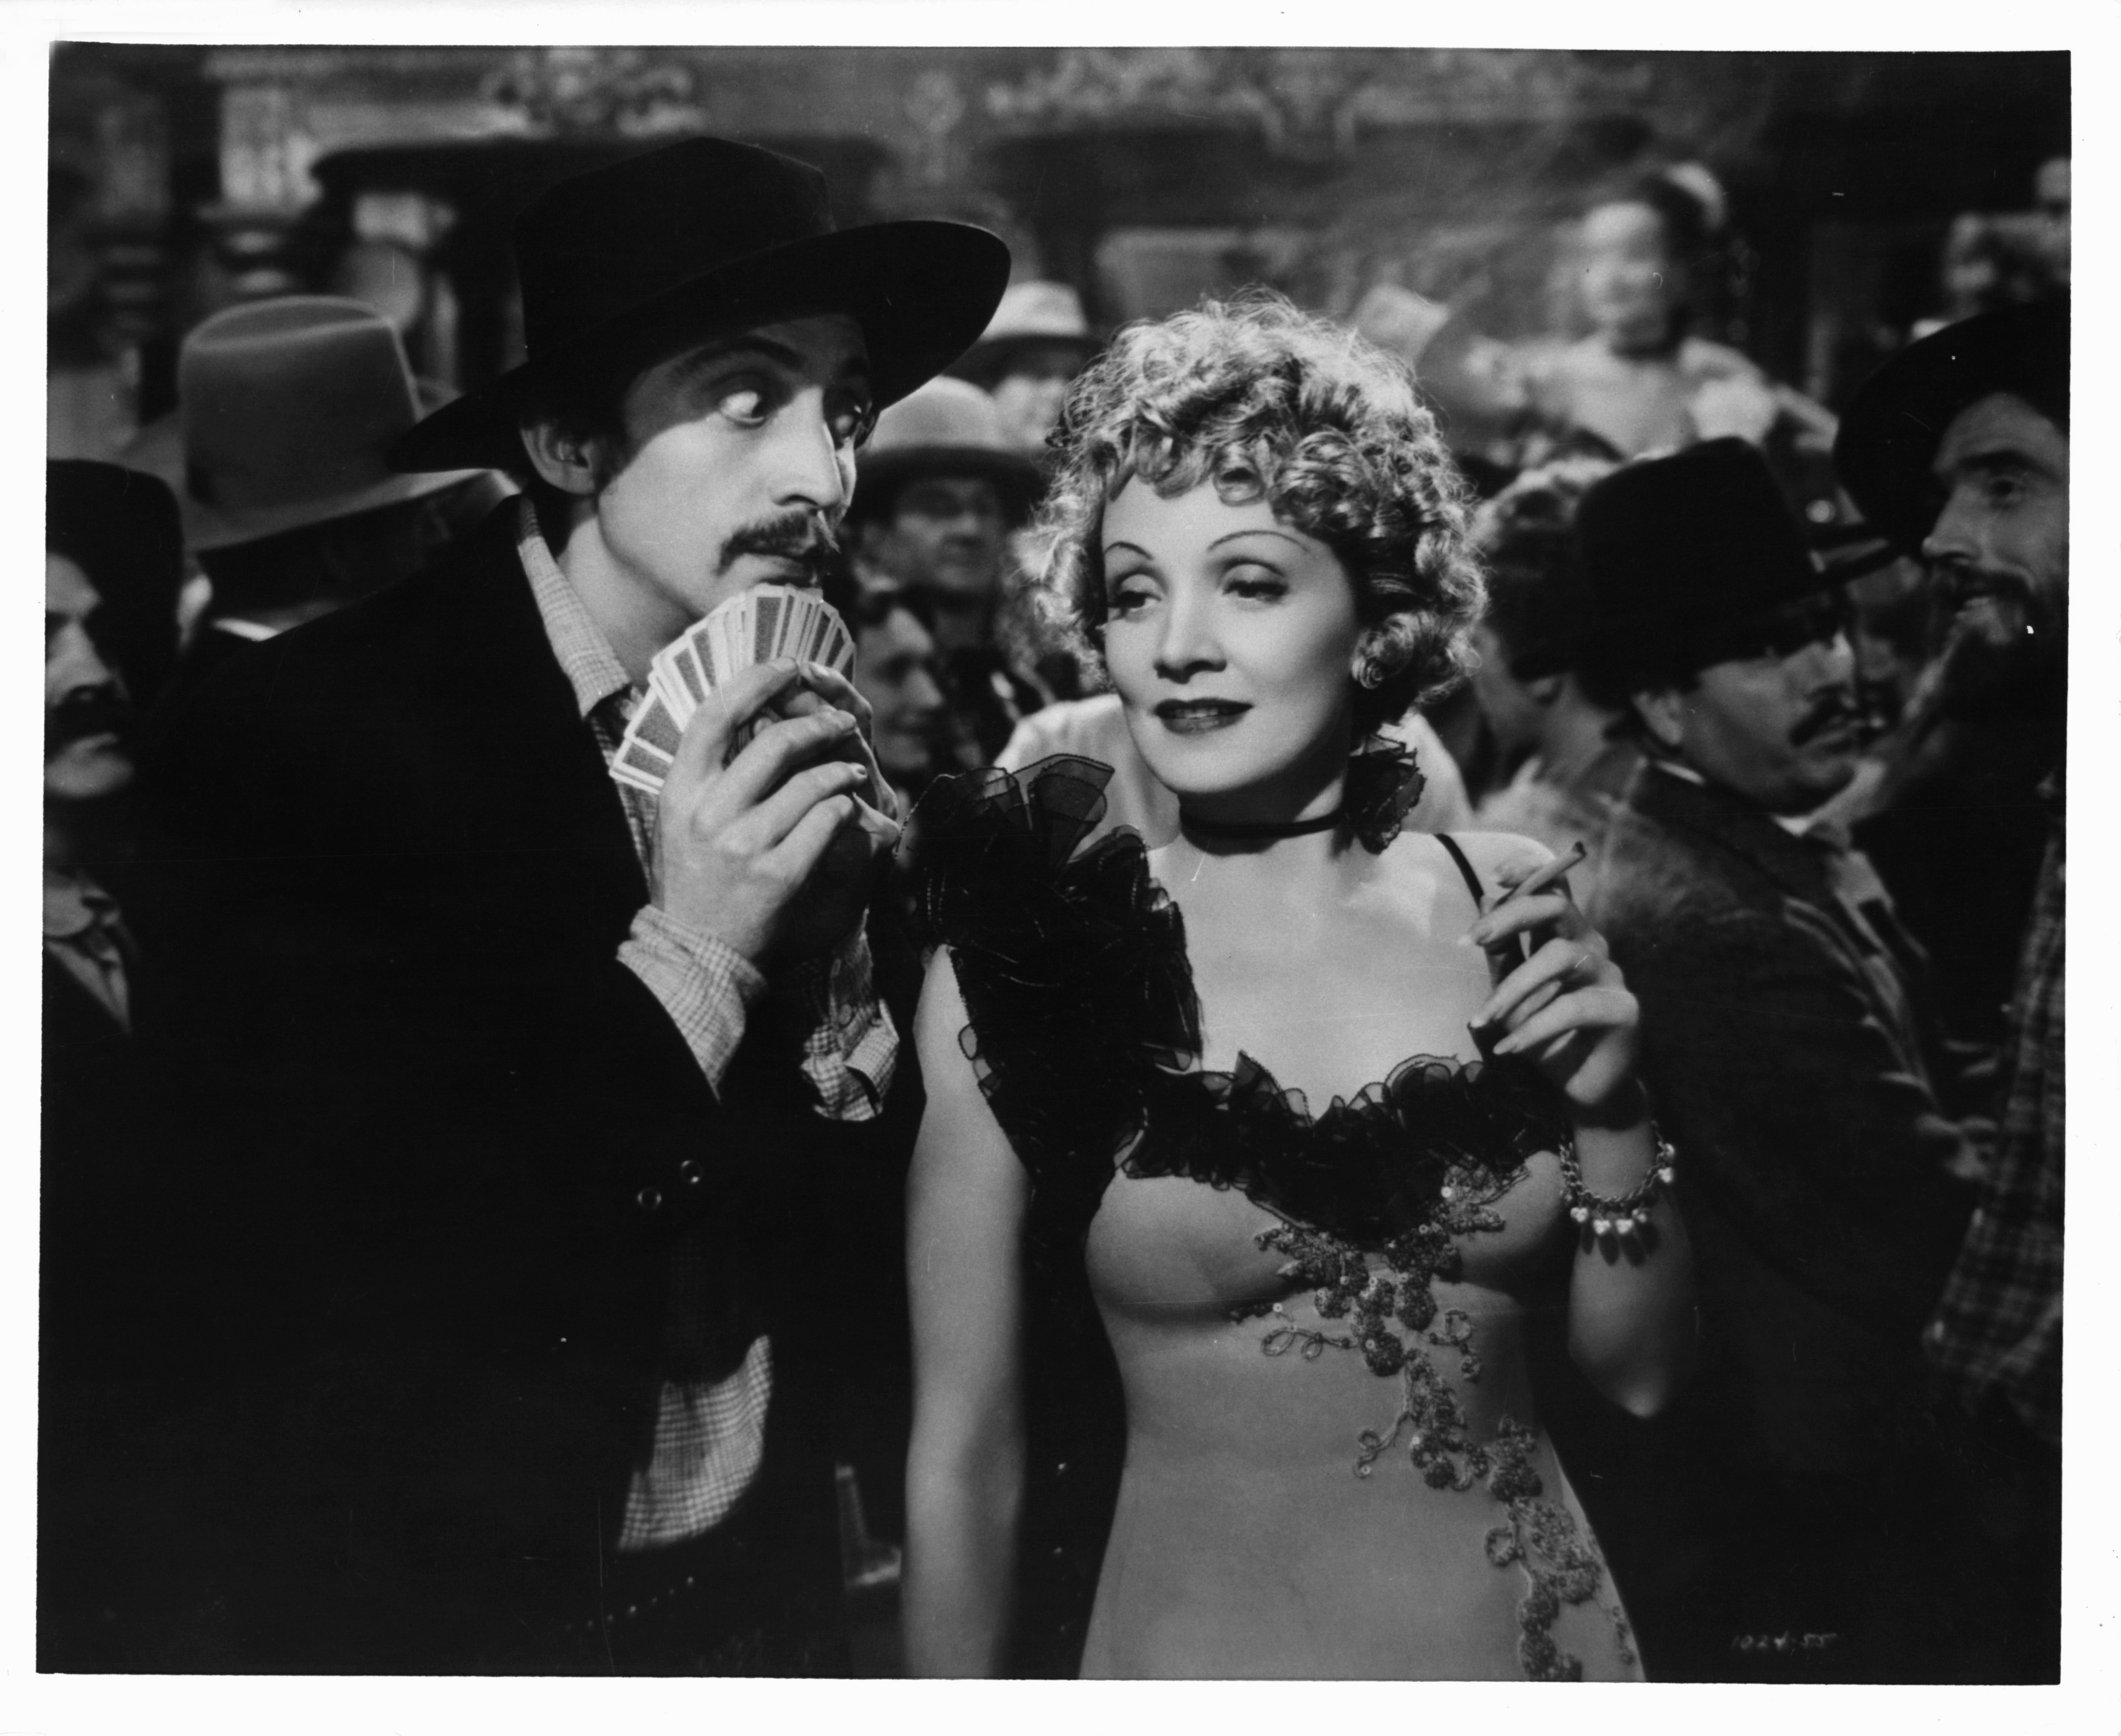 Still of Marlene Dietrich in Destry Rides Again (1939)